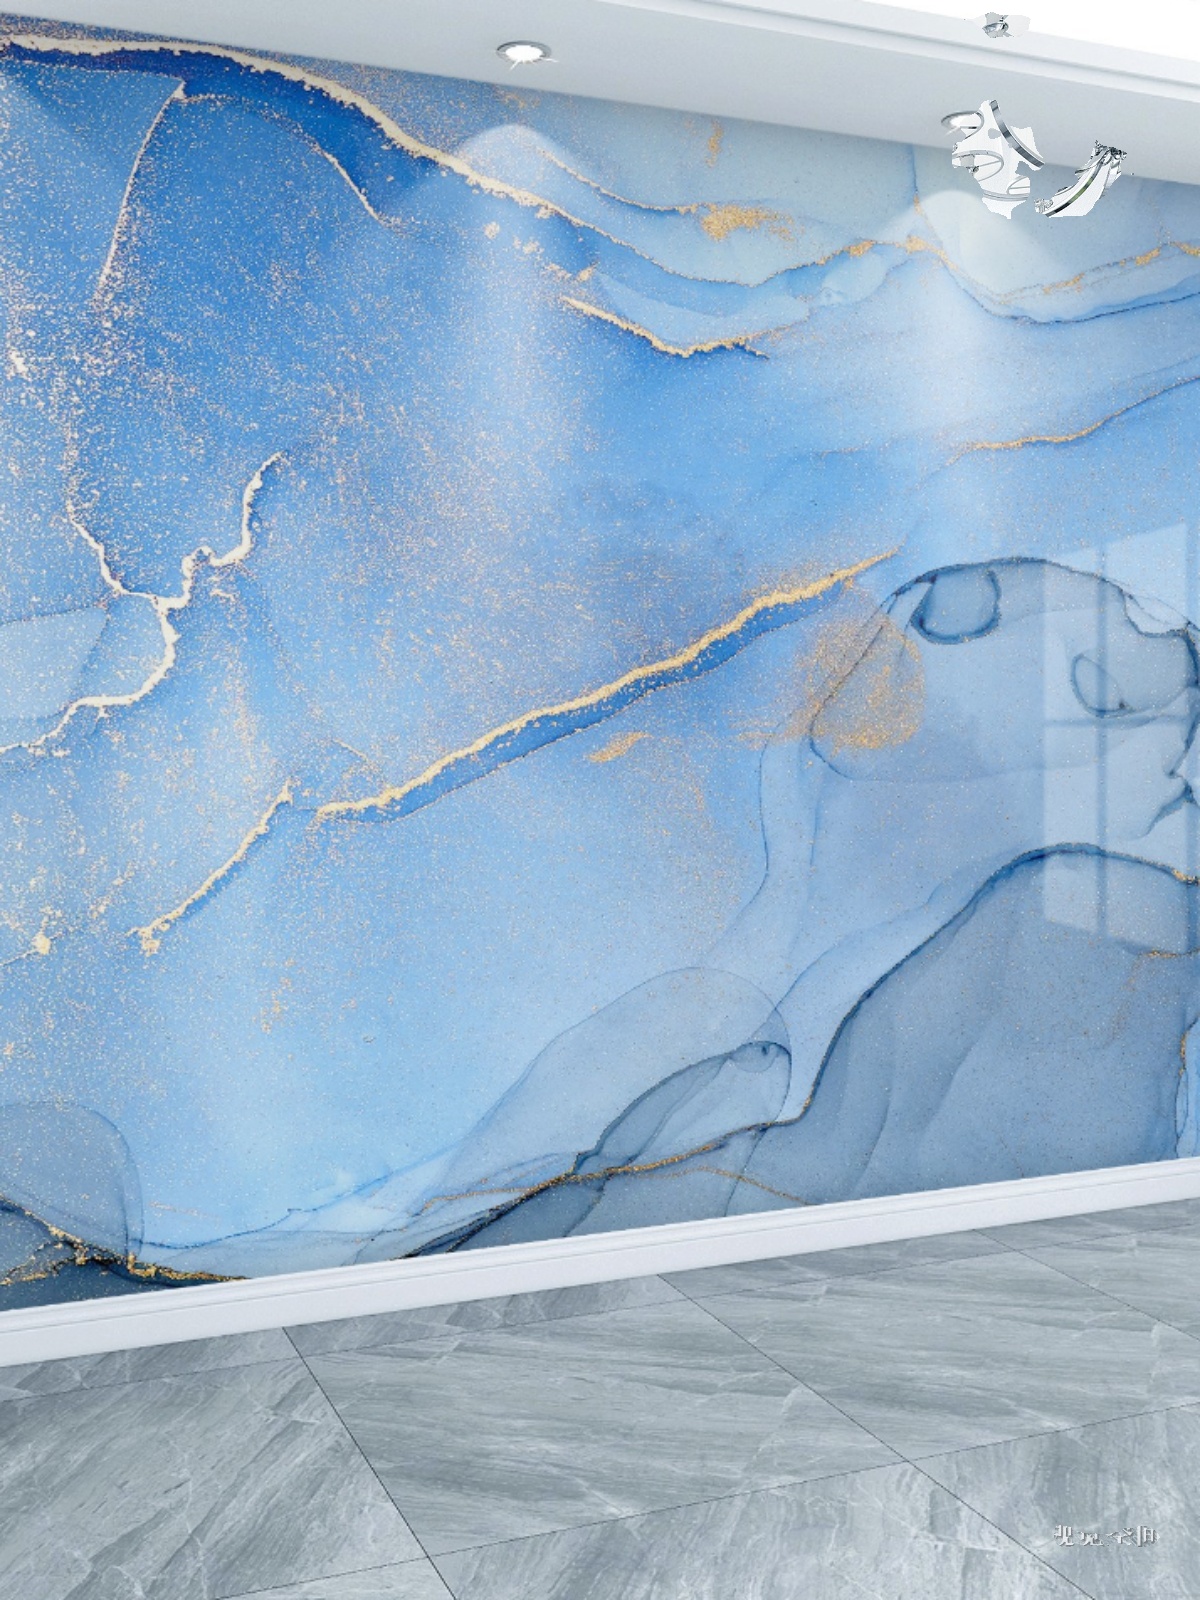 北欧抽象蓝色大理石纹壁纸个性创意客厅电视背景墙纸卧室床头壁画